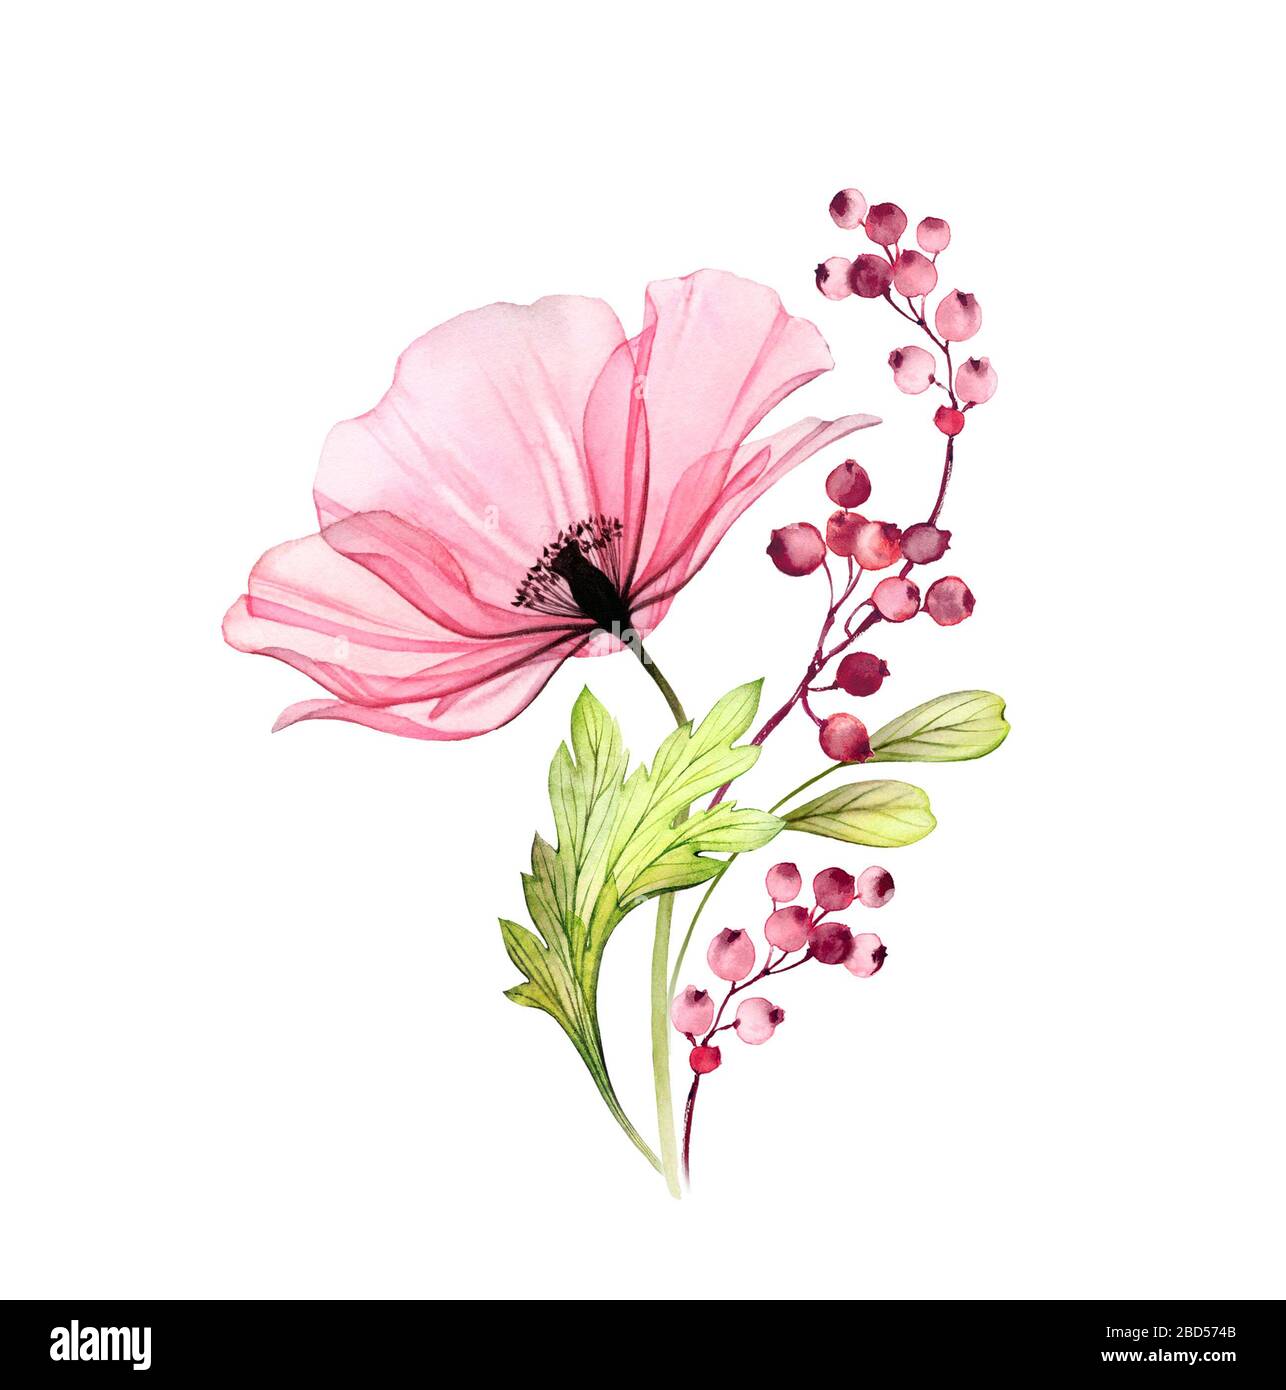 Aquarell Rose Bouquet. Große rosafarbene Blume mit Blättern und Beeren isoliert auf Weiß. Handgemalte Kunstwerke mit detaillierten Kronblättern. Botanische Illustration Stockfoto